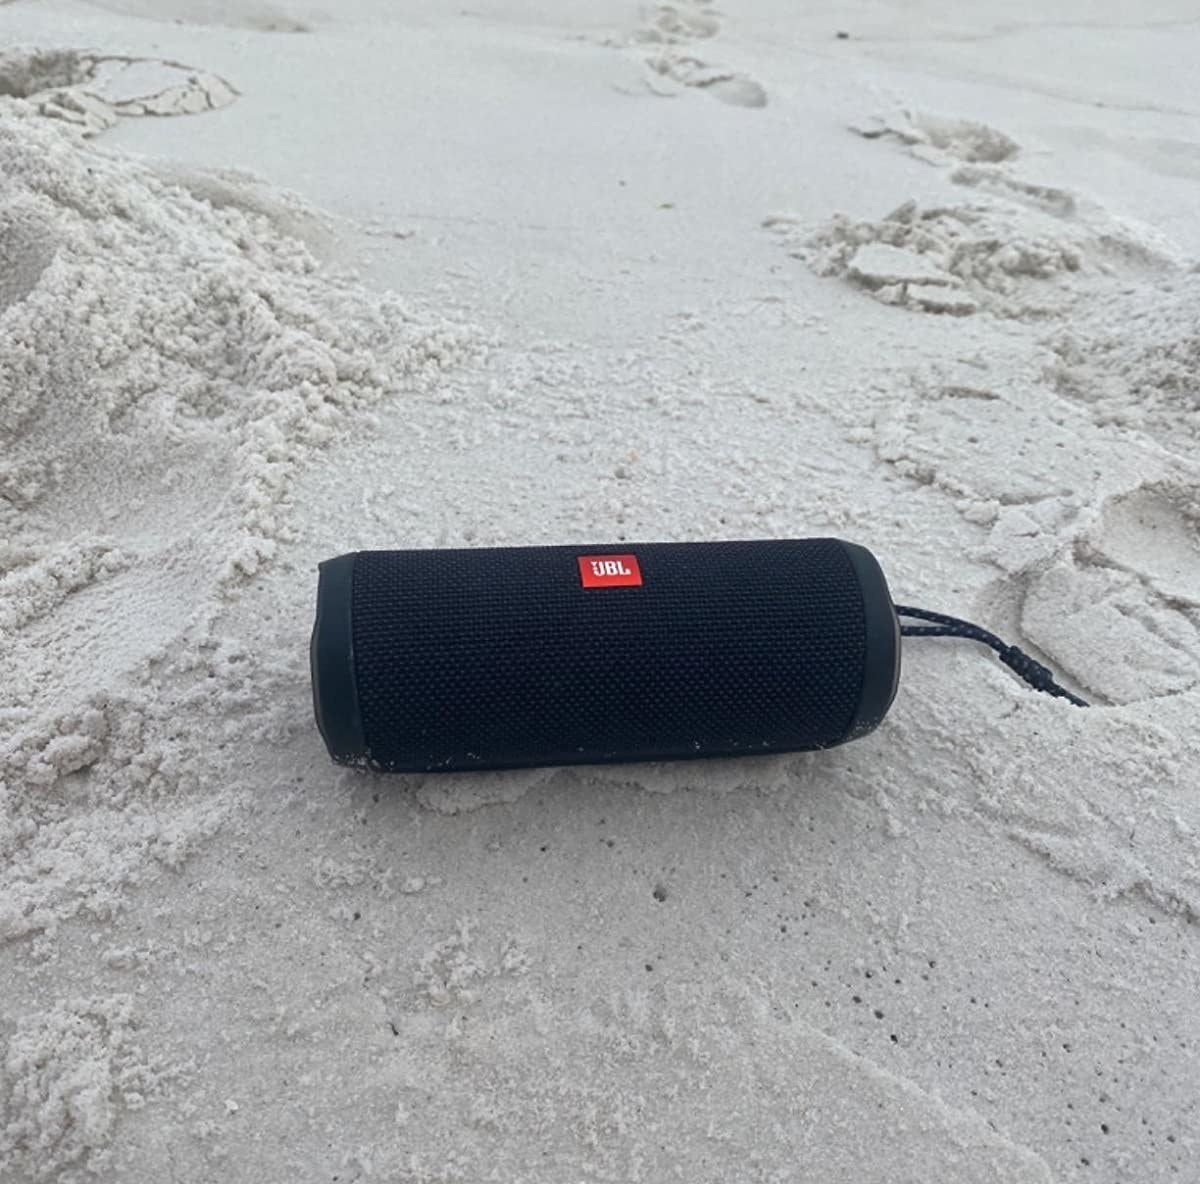 a tube-like speaker at the beach